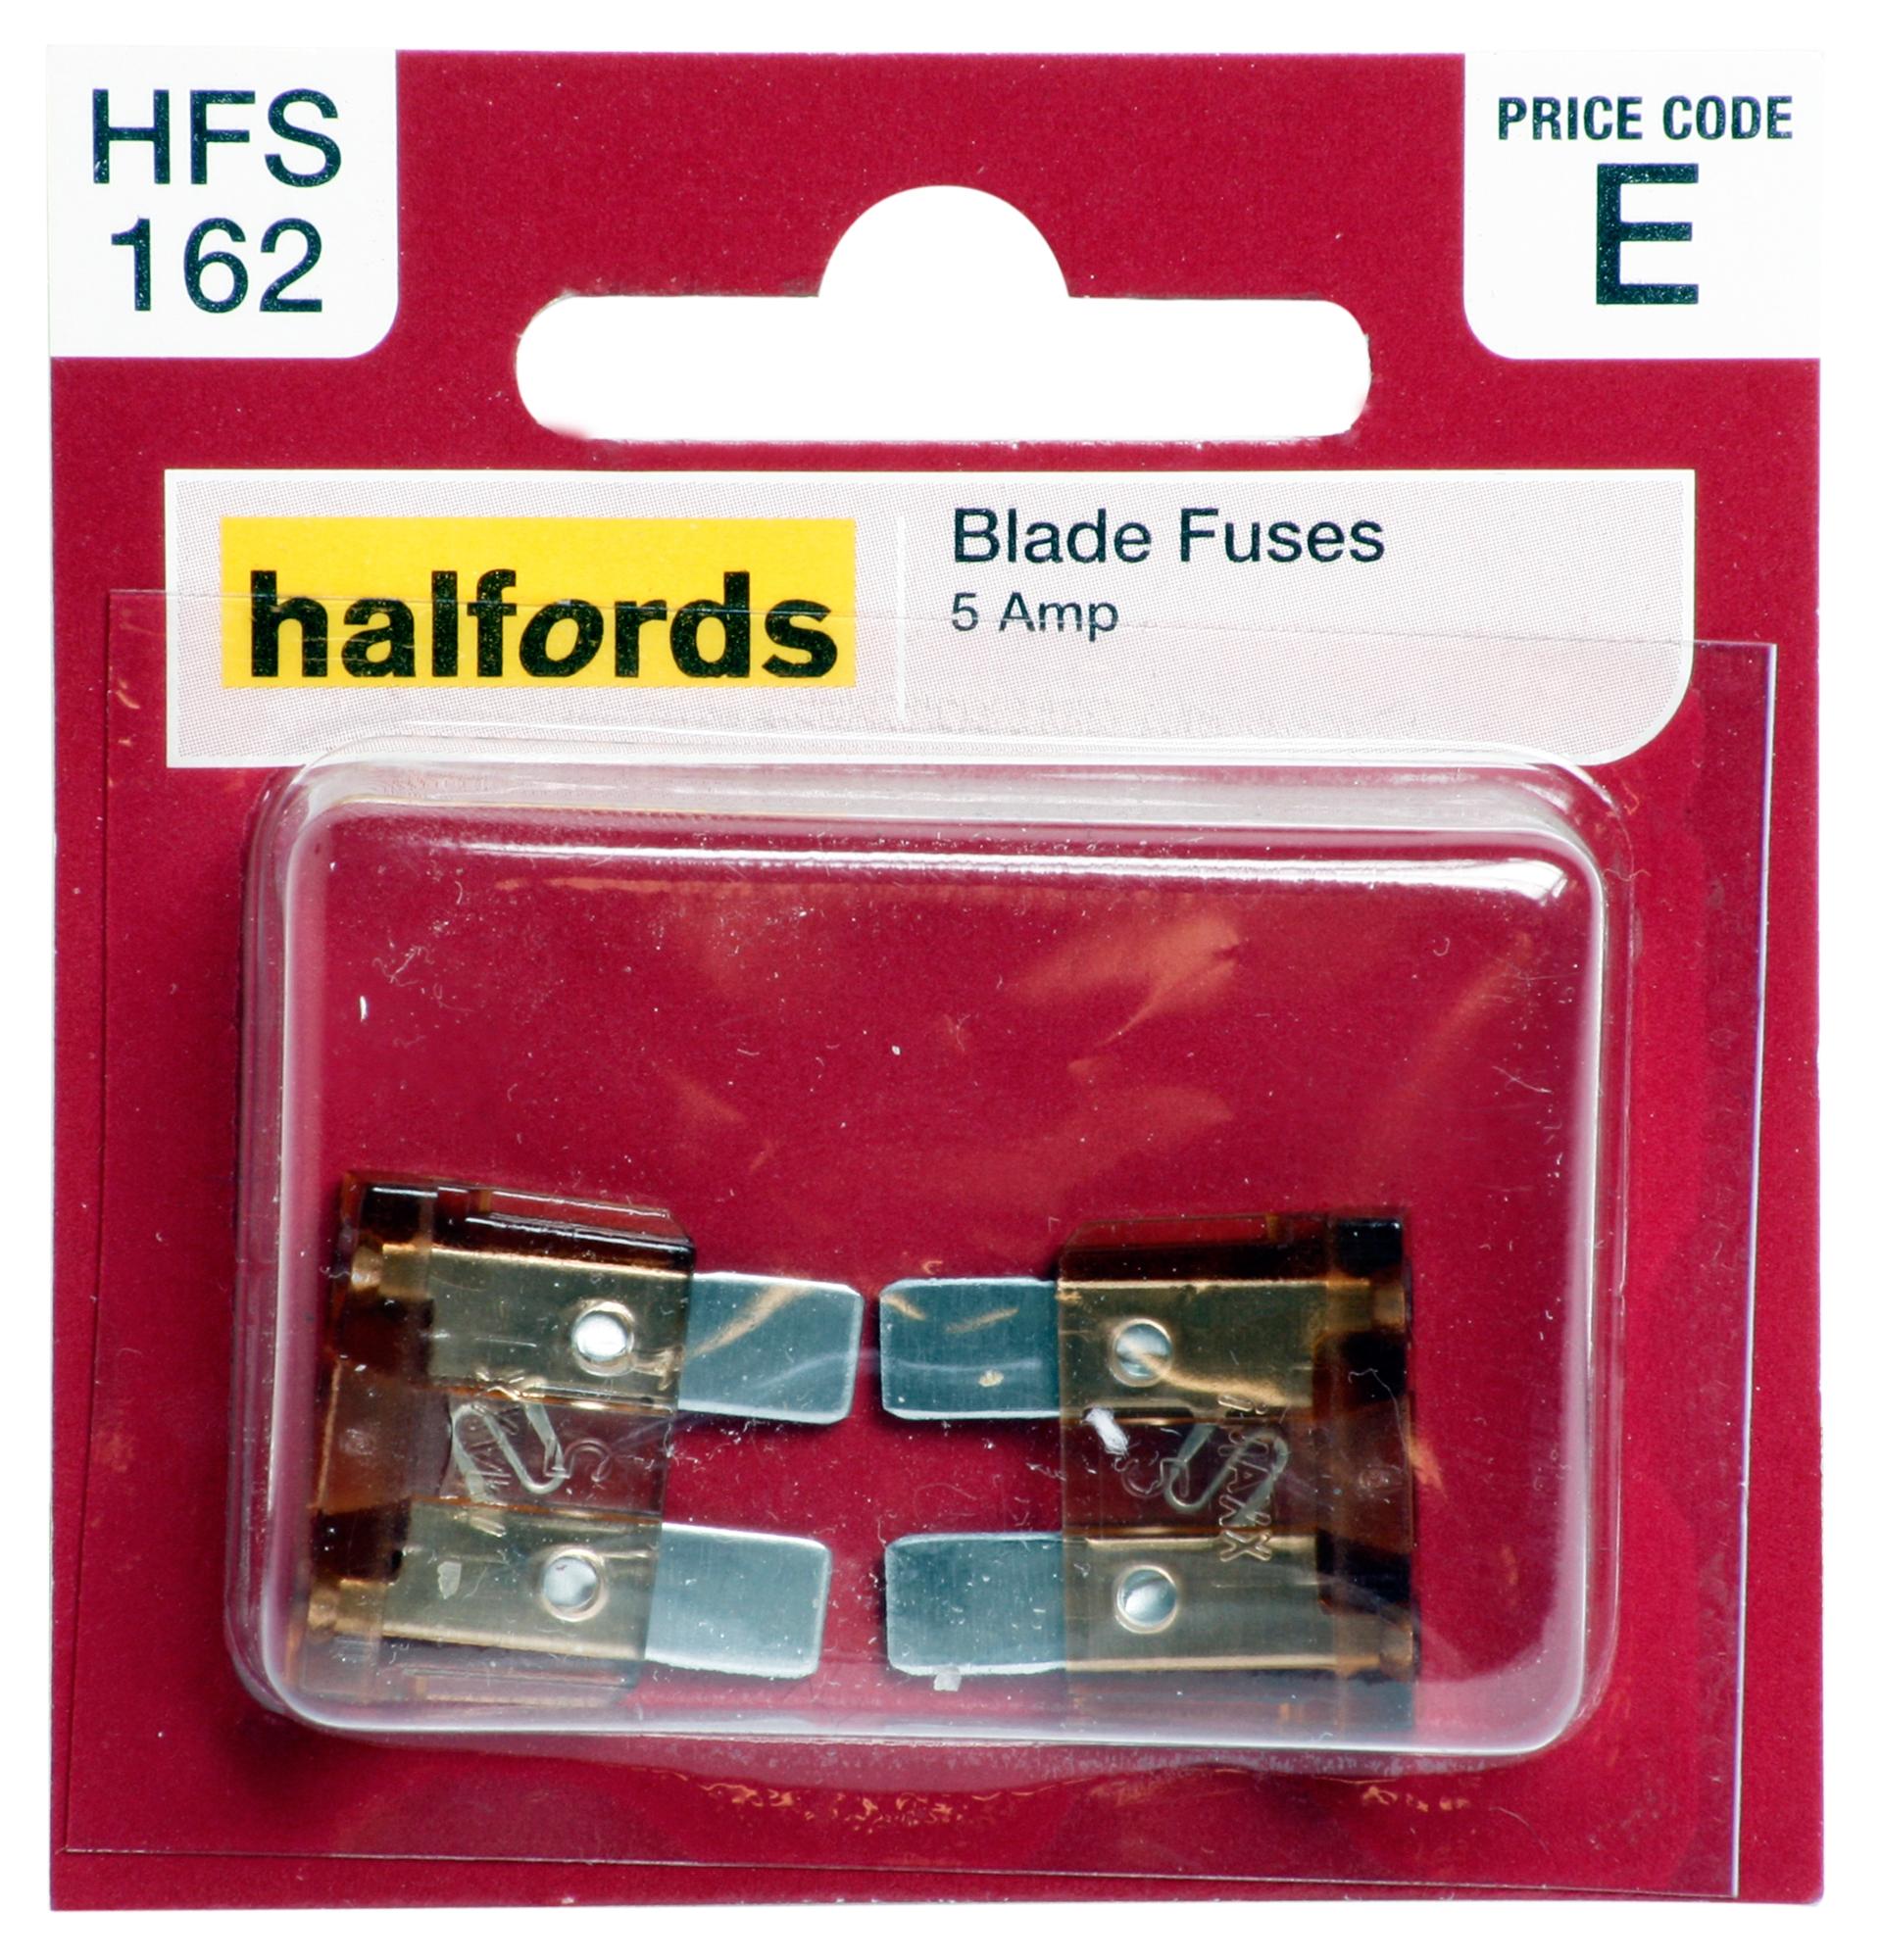 Halfords Blade Fuses 5 Amp (Hfs162)